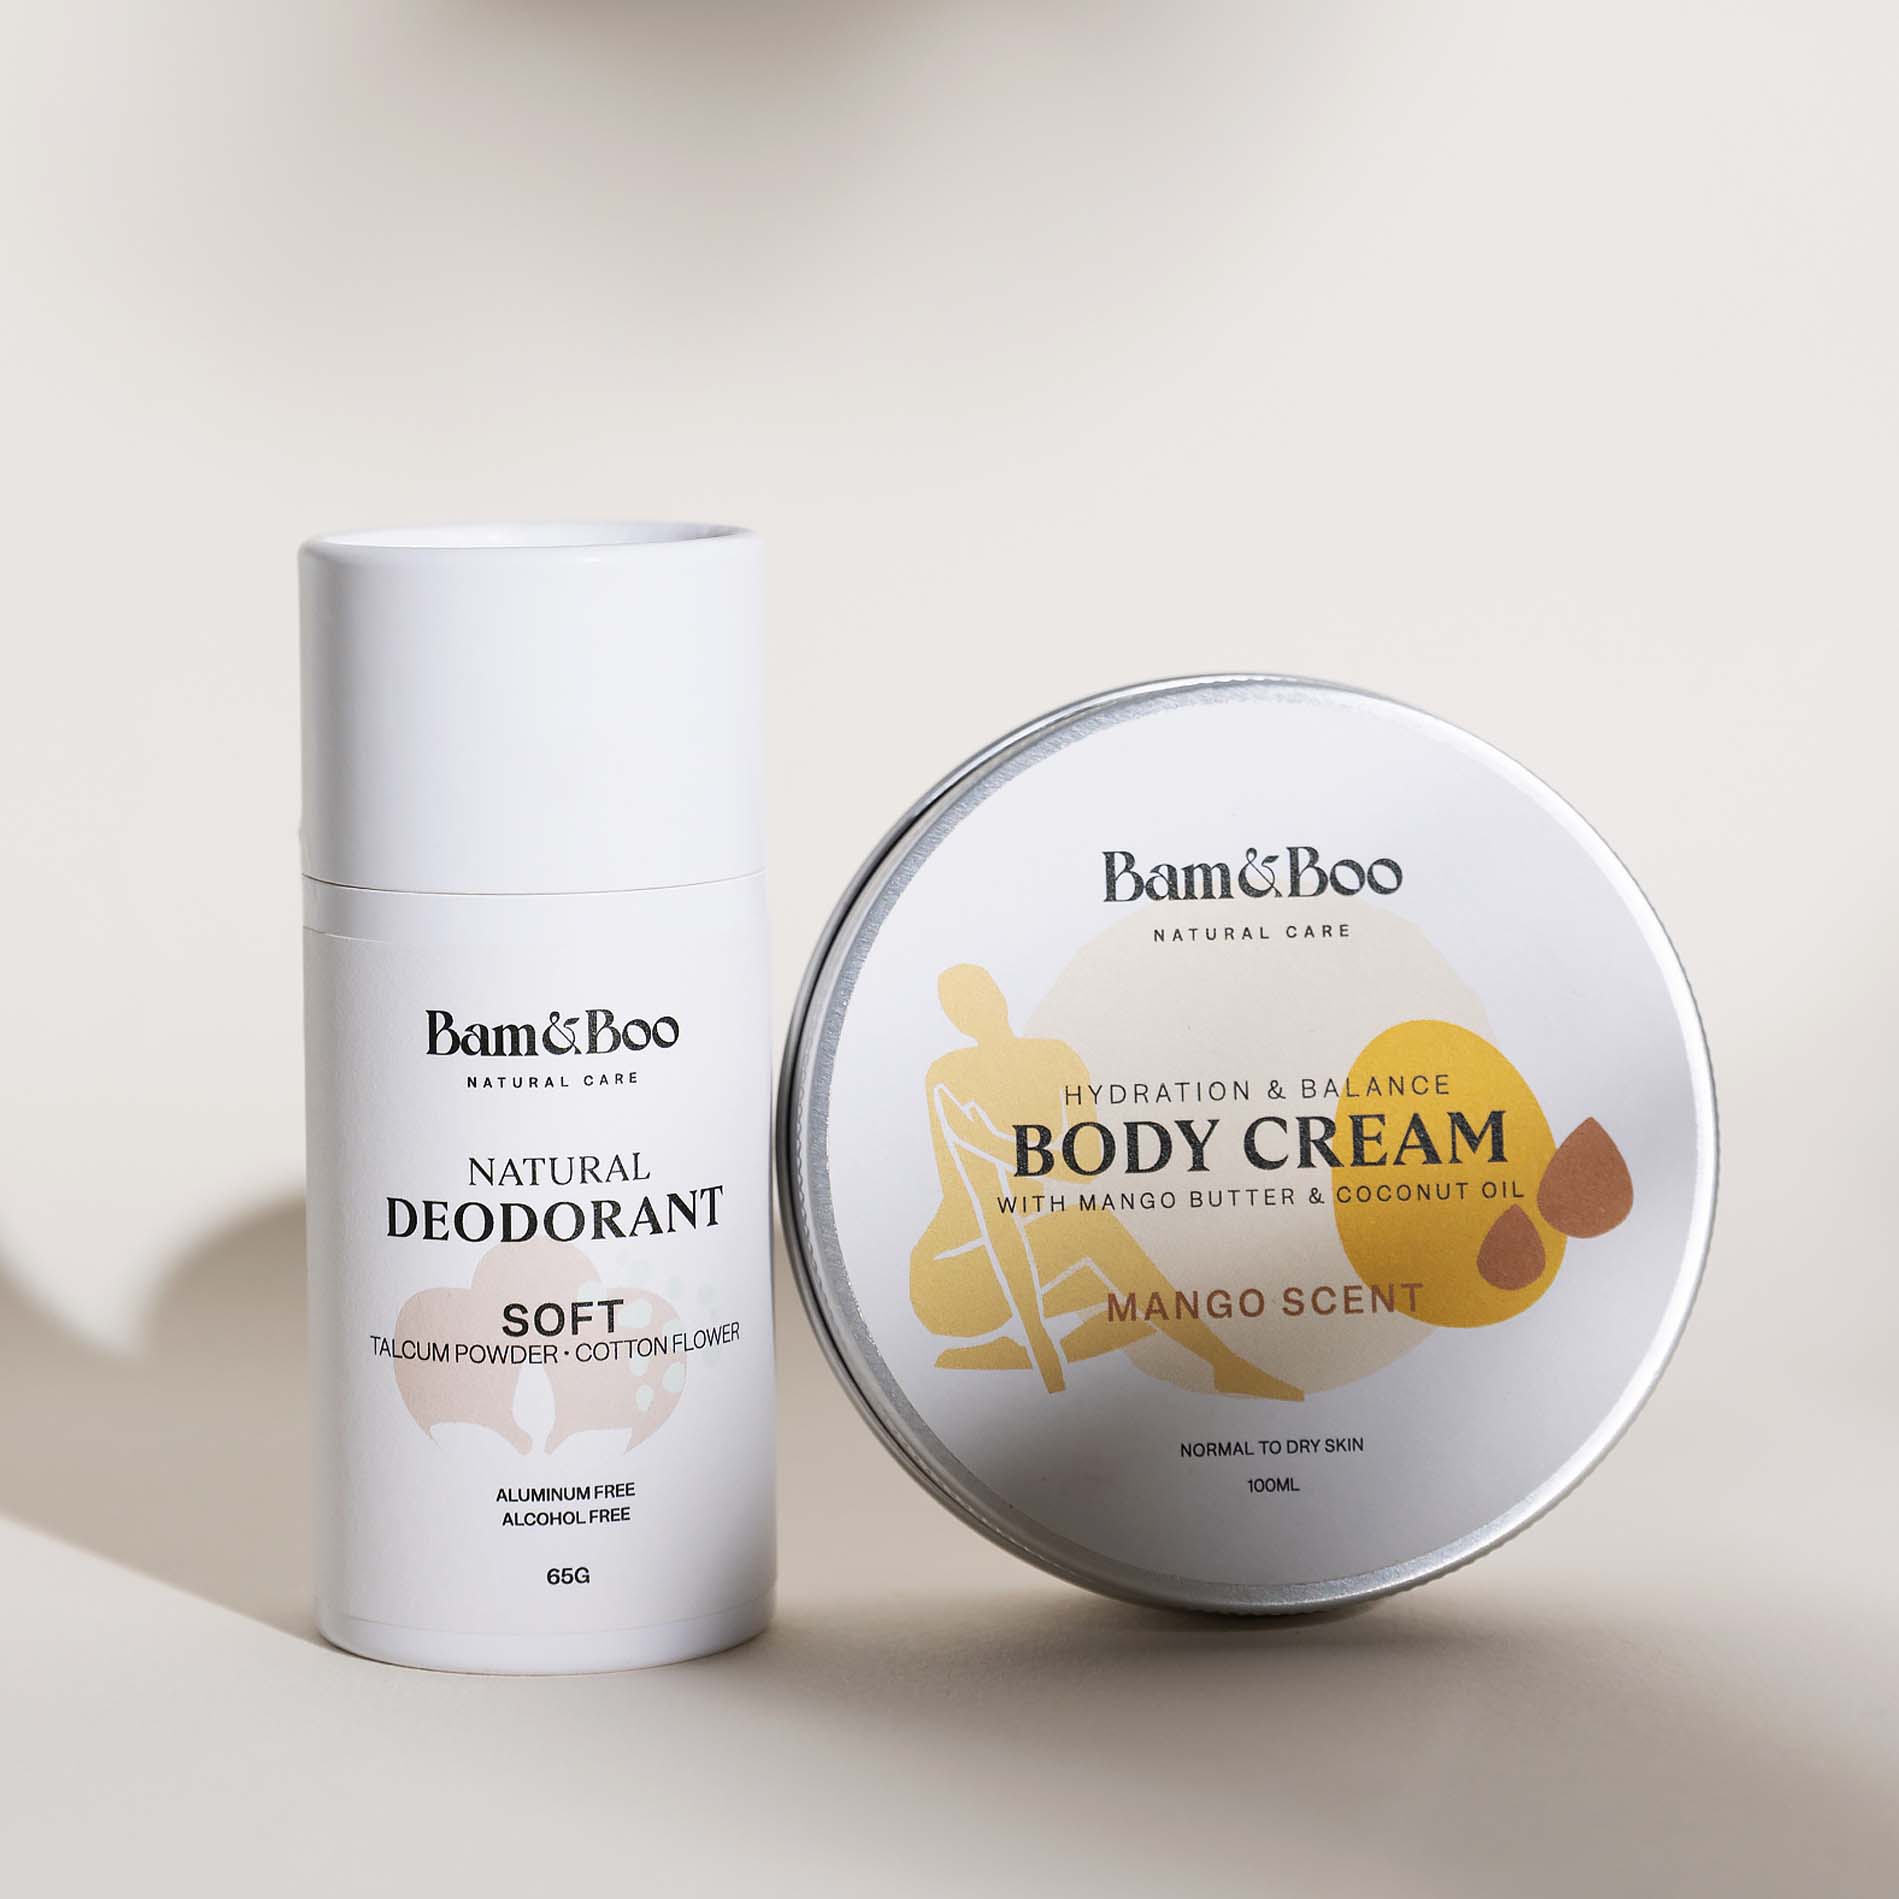 KIT | Bodilicious - Desodorante y crema corporal natural - Bam&Boo - Eco-friendly, vegan, cuidado personal y bucal sostenible